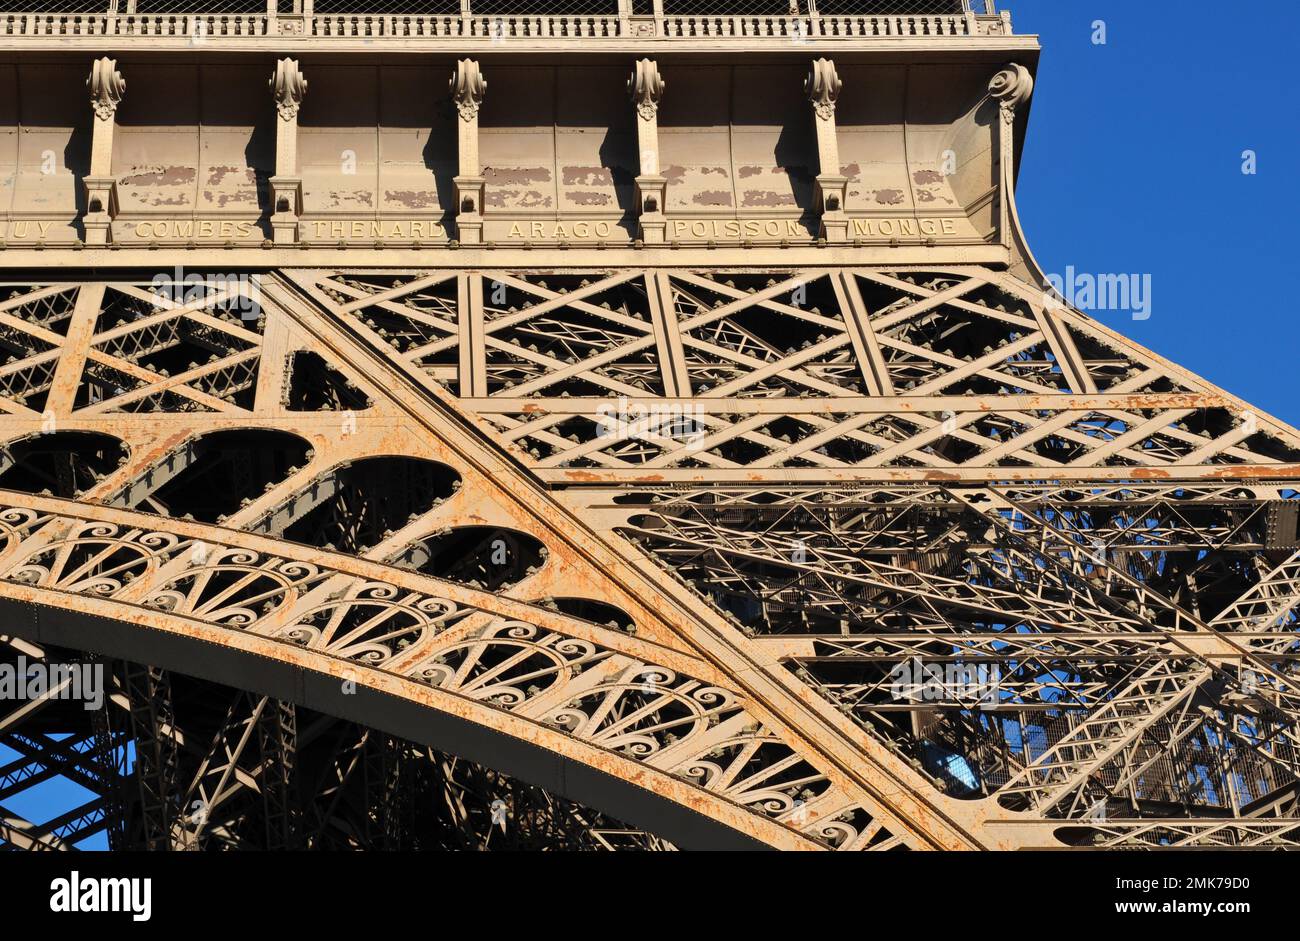 Details, die die aufwendige Eisenarbeit des berühmten Eiffelturms in Paris und die Namen berühmter französischer Wissenschaftler und Ingenieure zeigen. Stockfoto